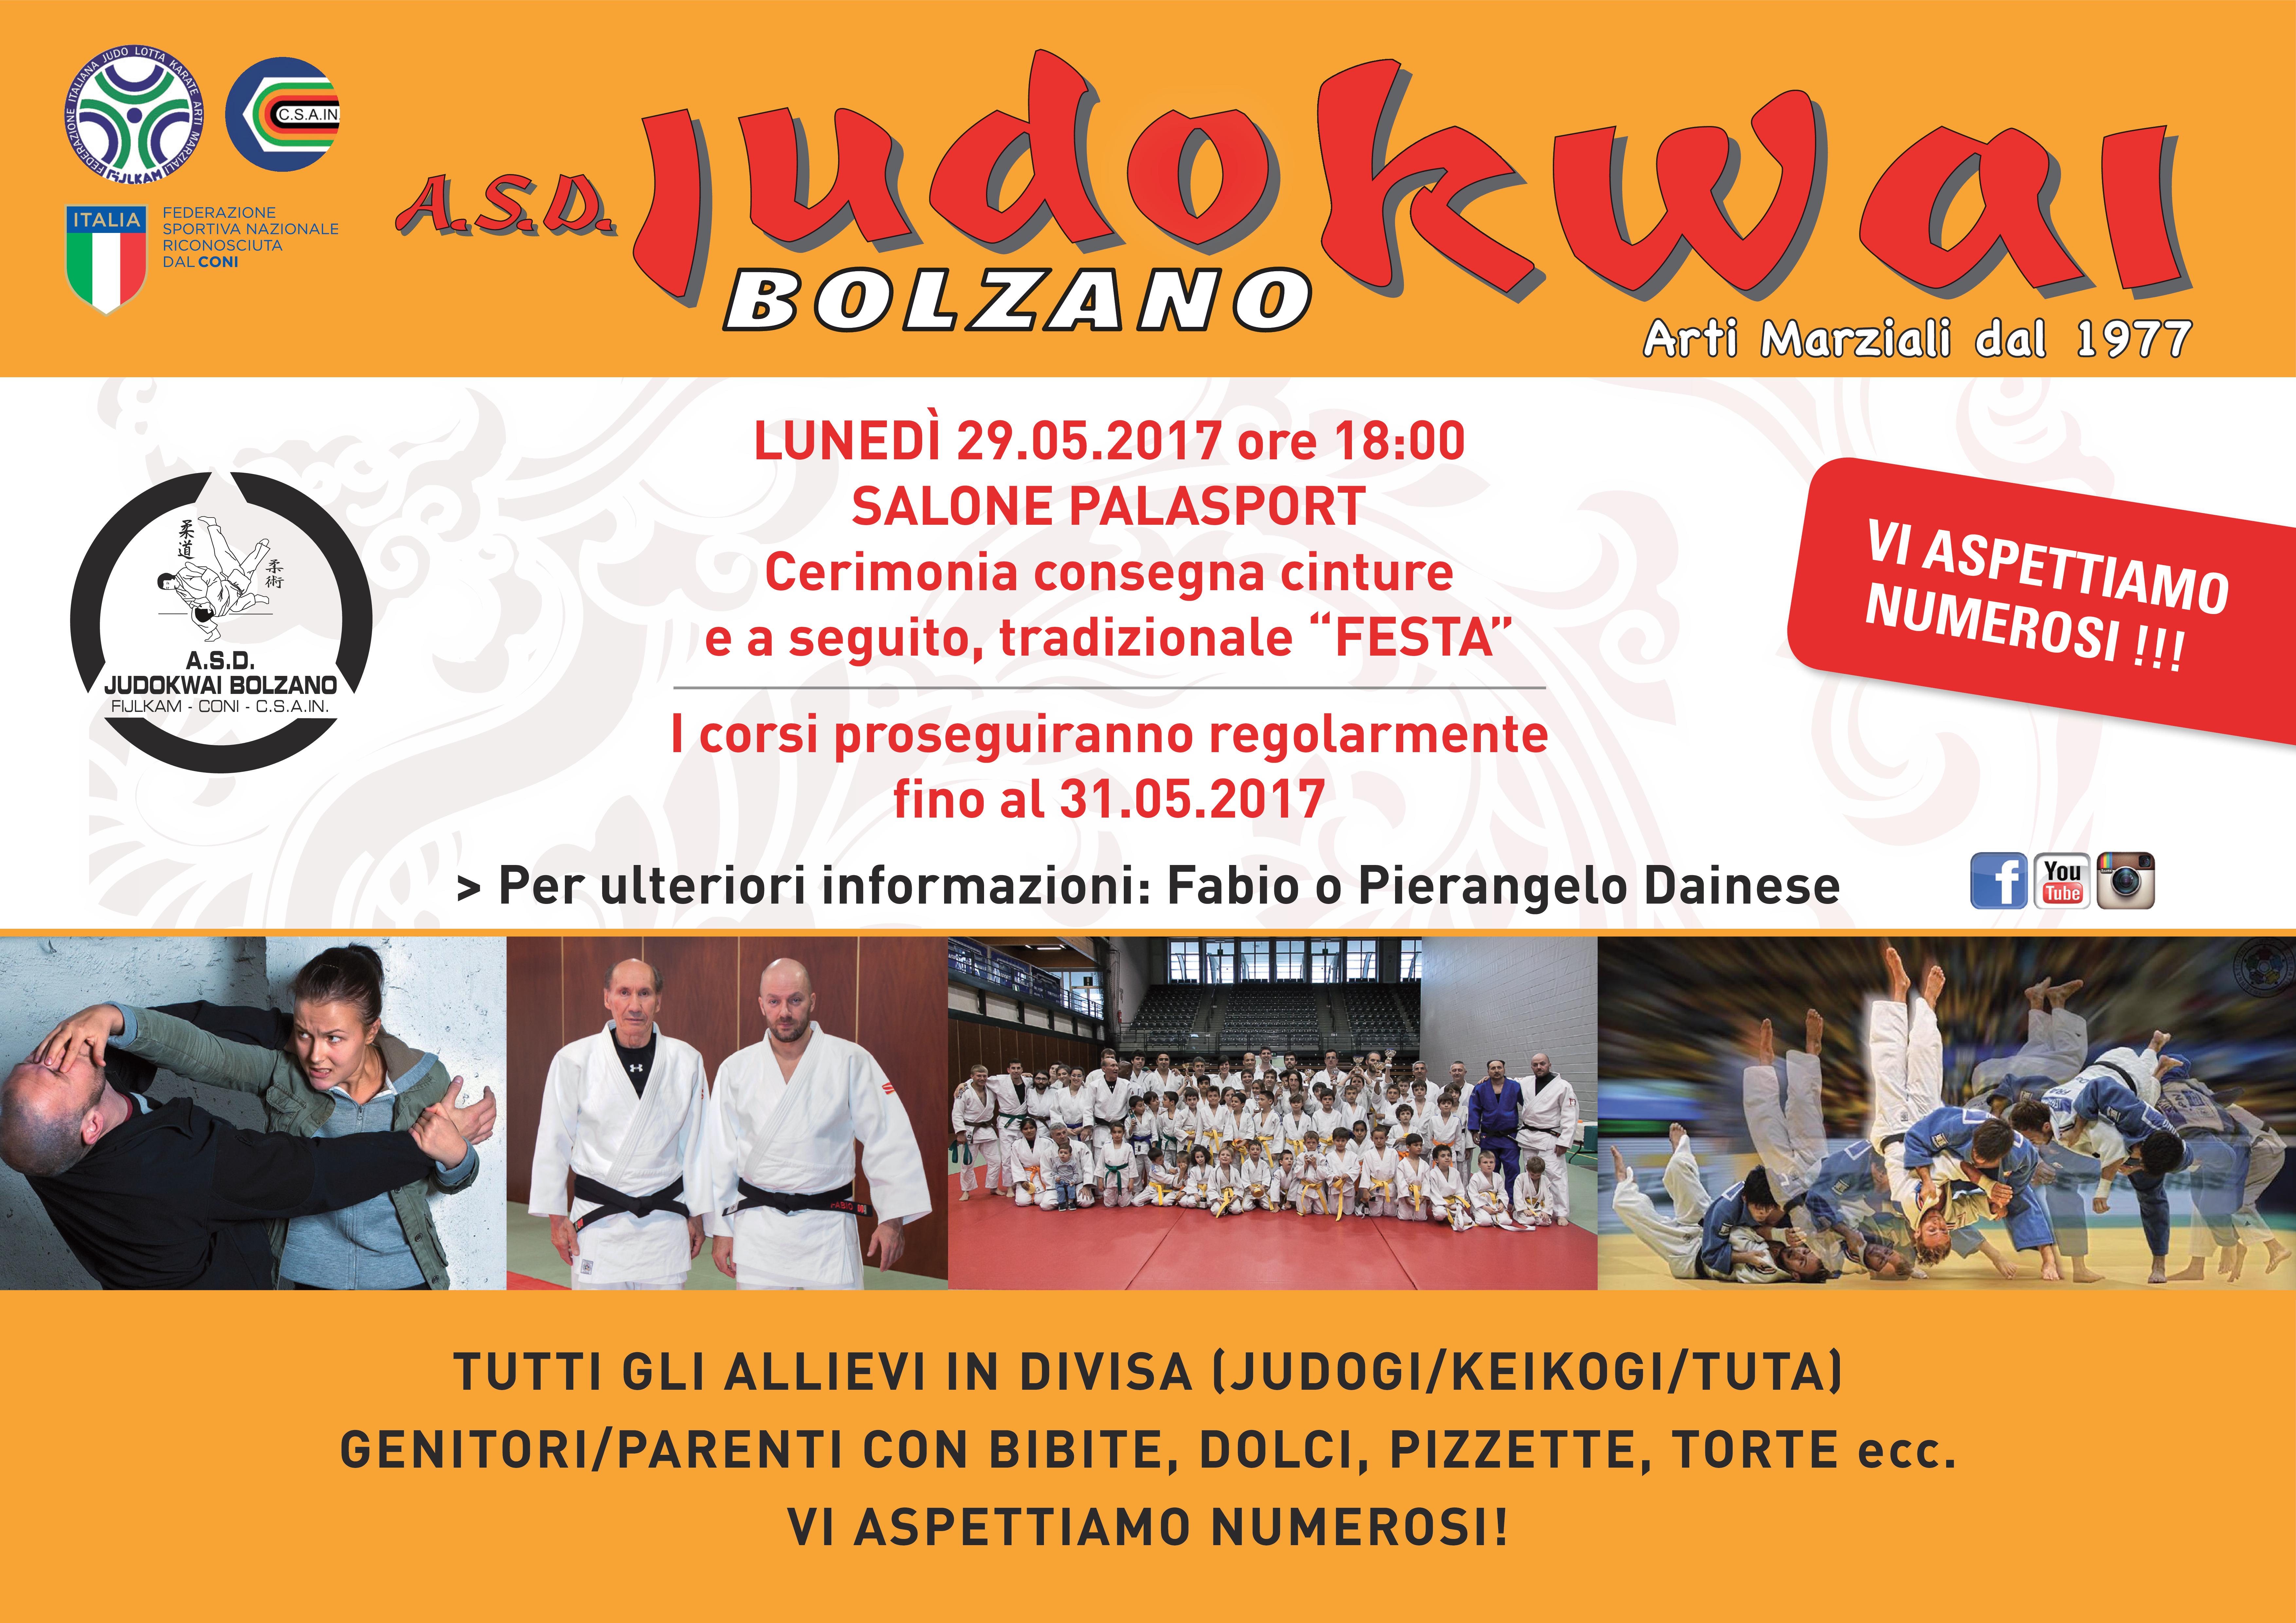 A.S.D. Judokwai Bolzano   Cerimonia consegna Cinture 2016_2017 e tradizionale Festa